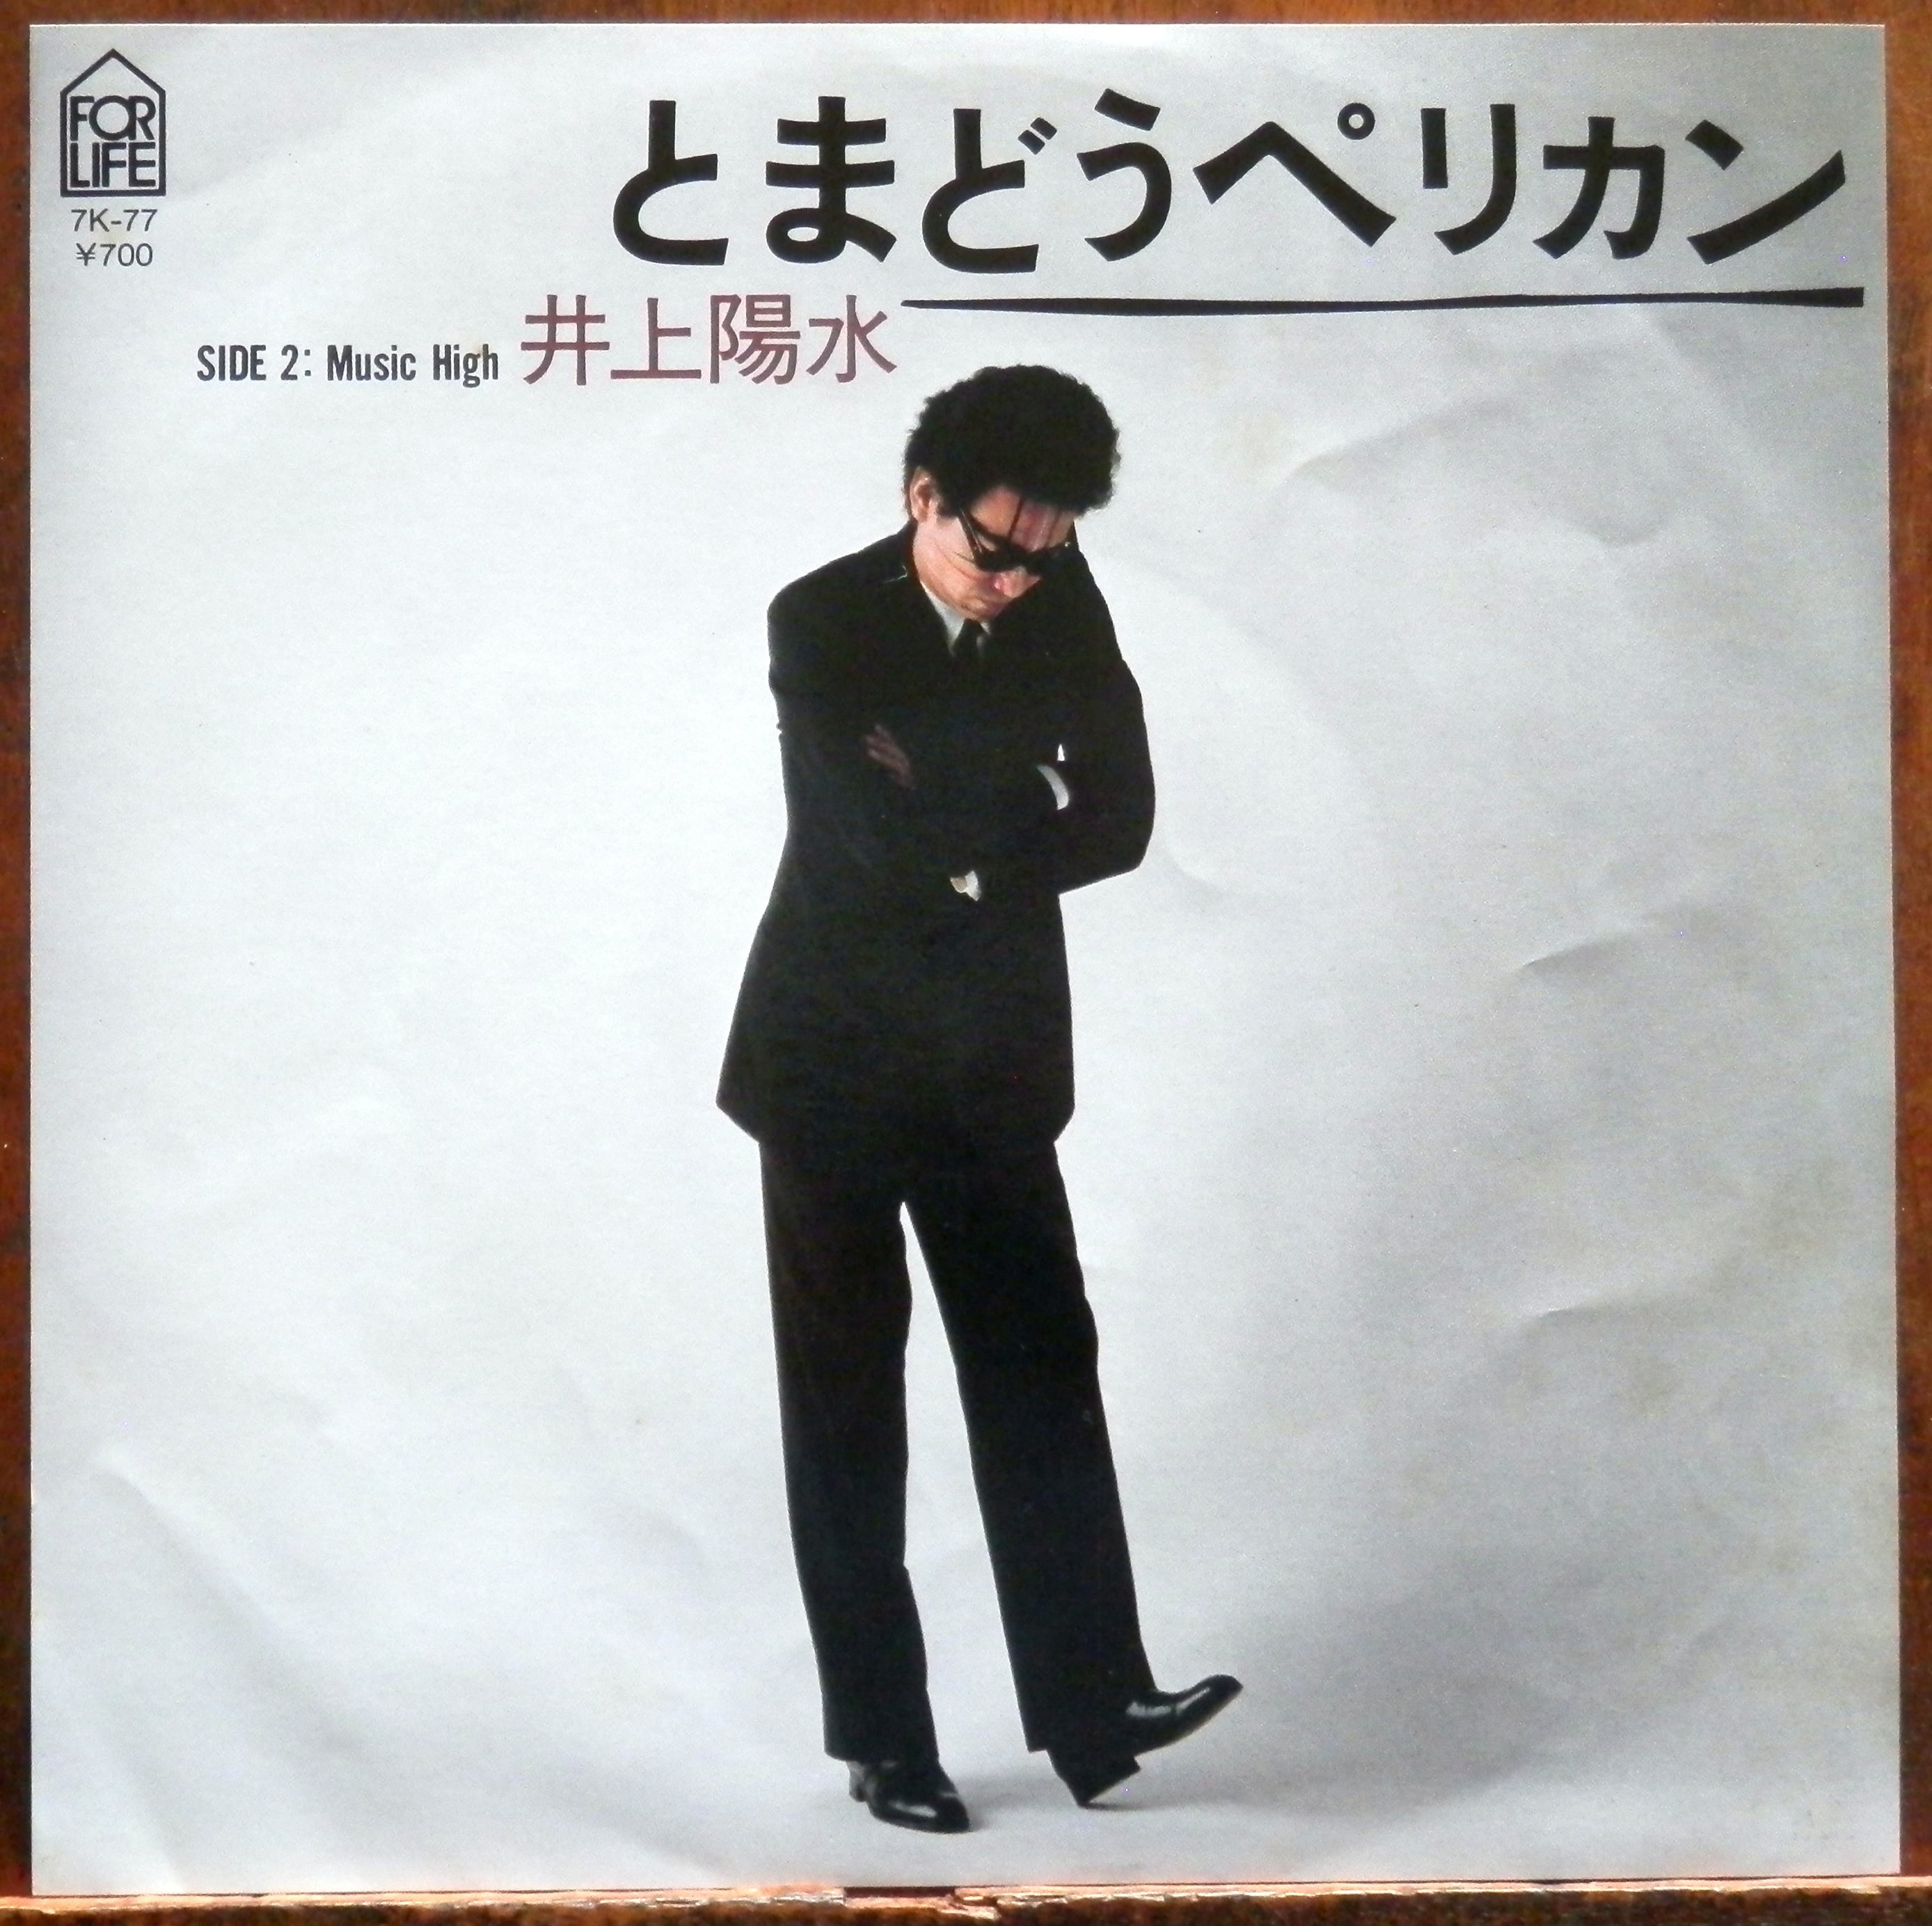 '82【EP】井上陽水 とまどうペリカン 音盤窟レコード